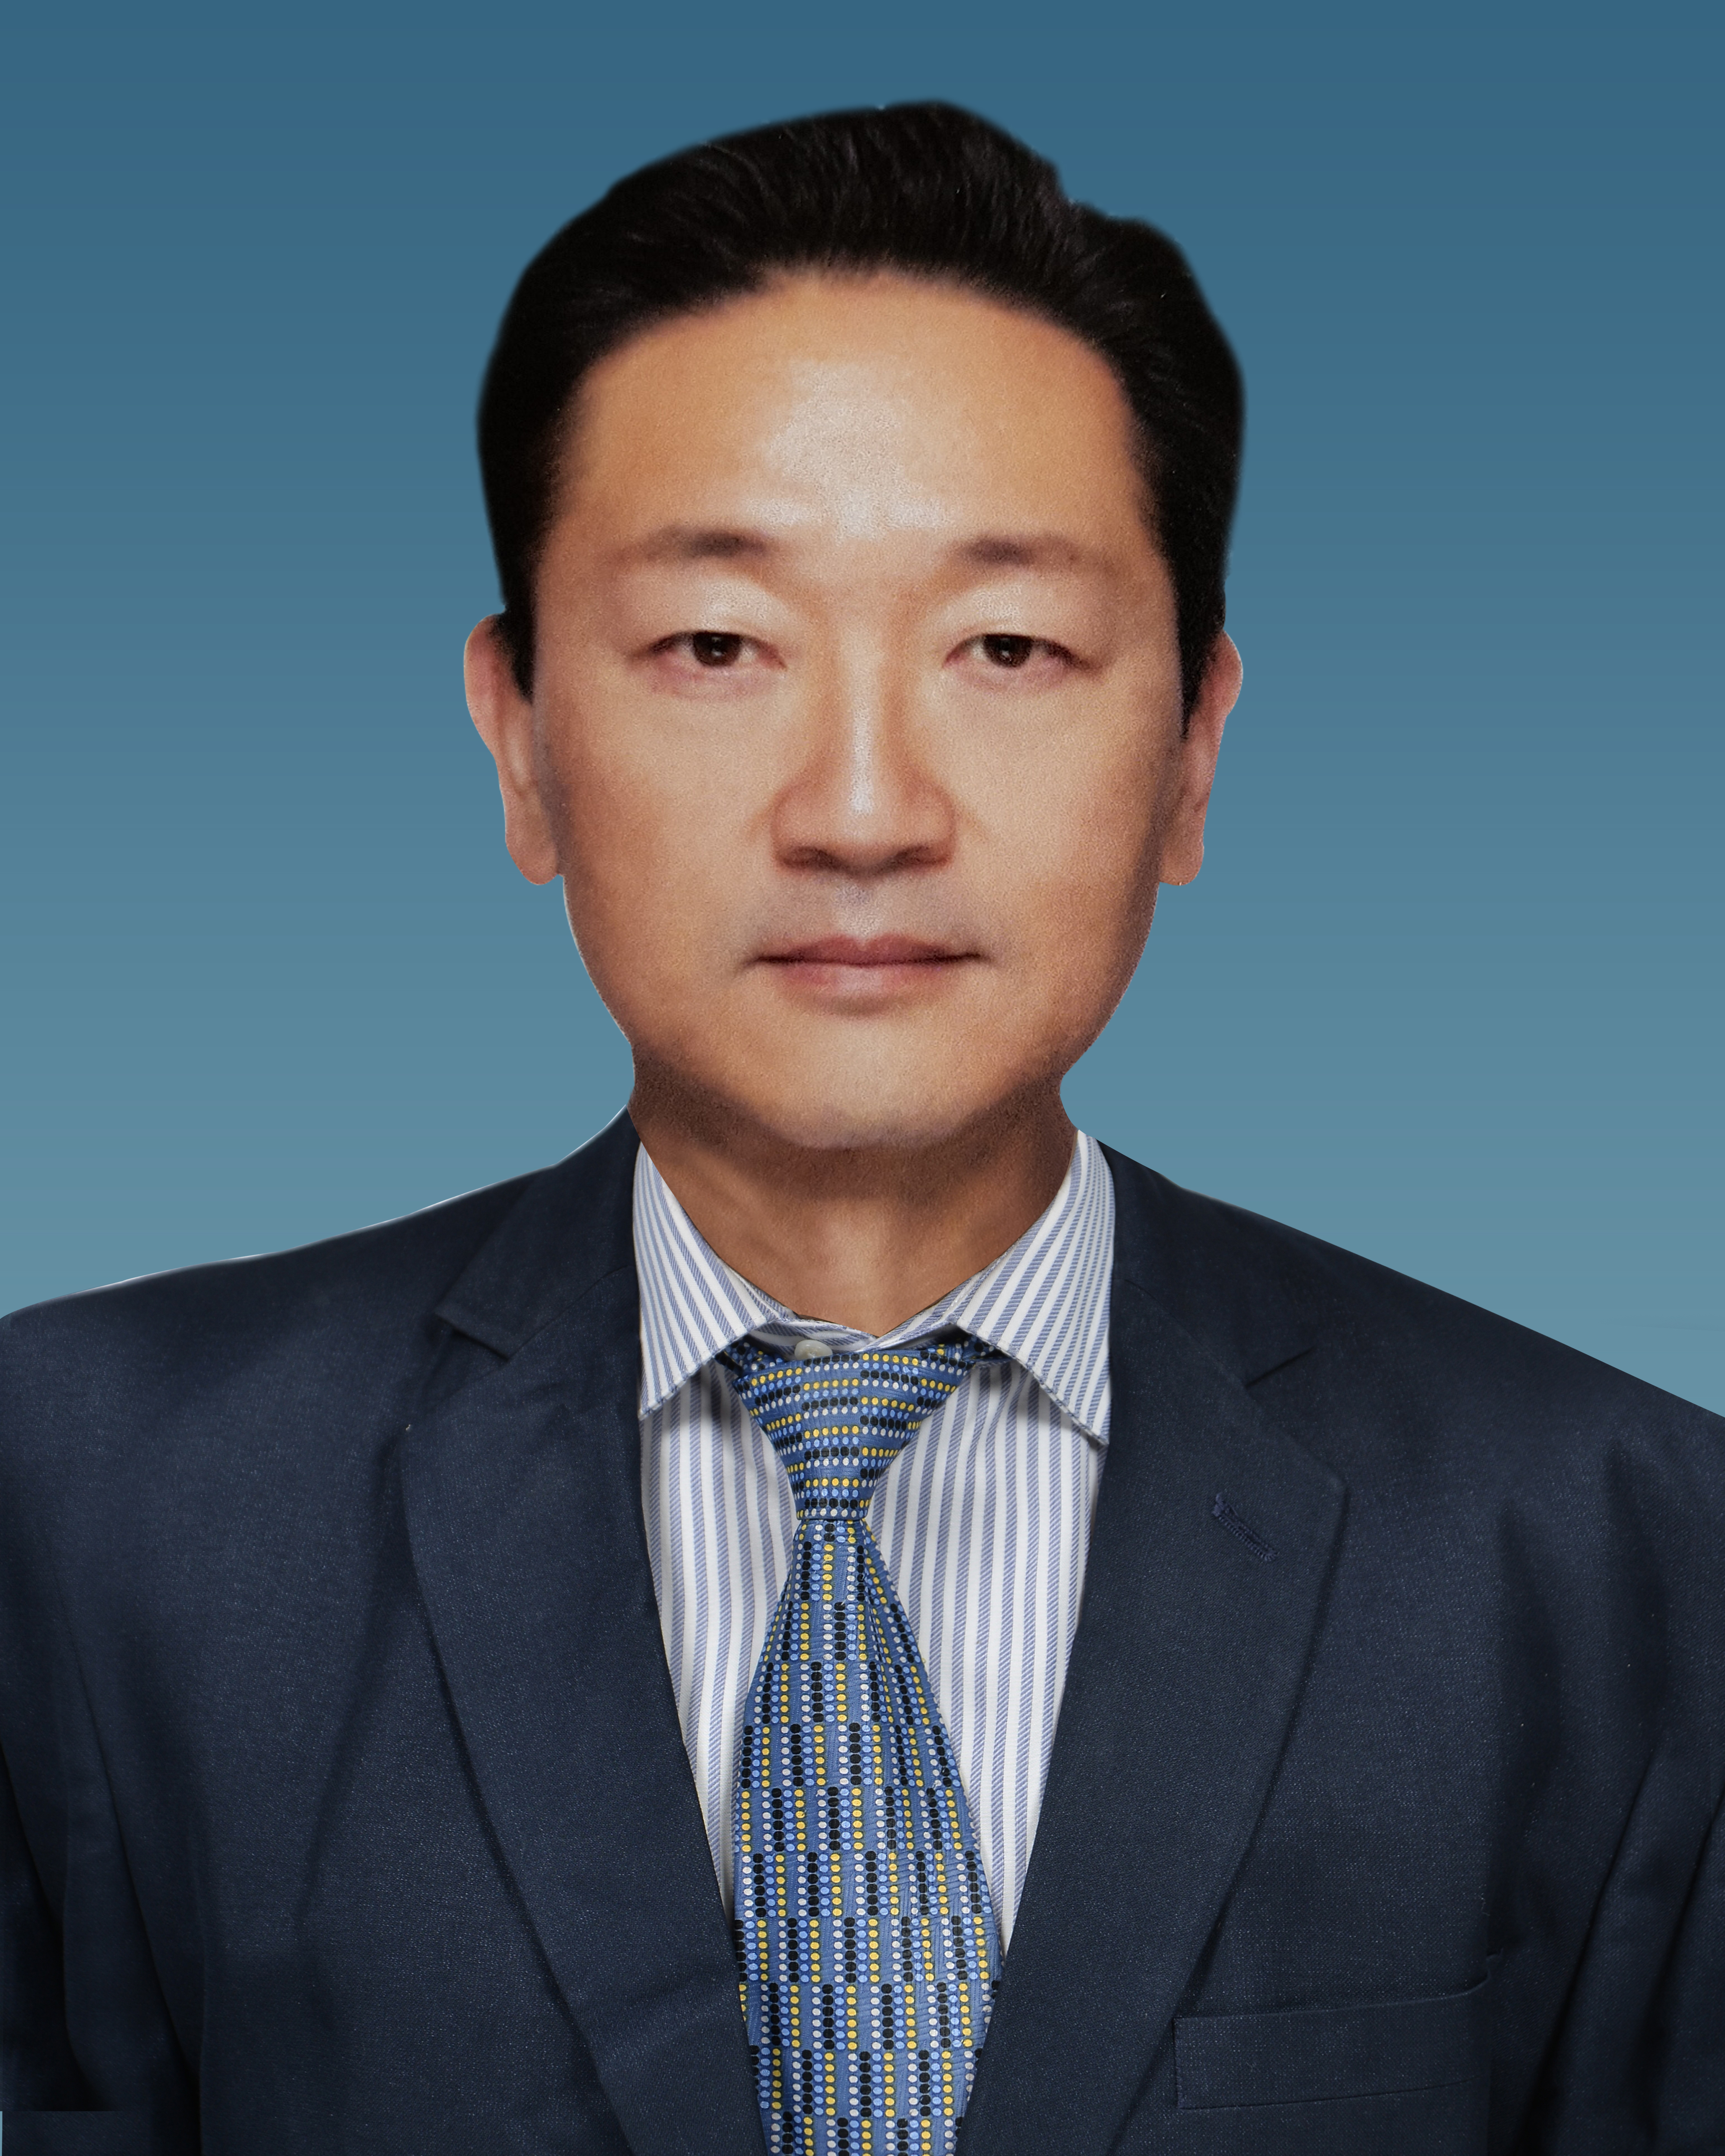 Mr. Hong Sang Cho